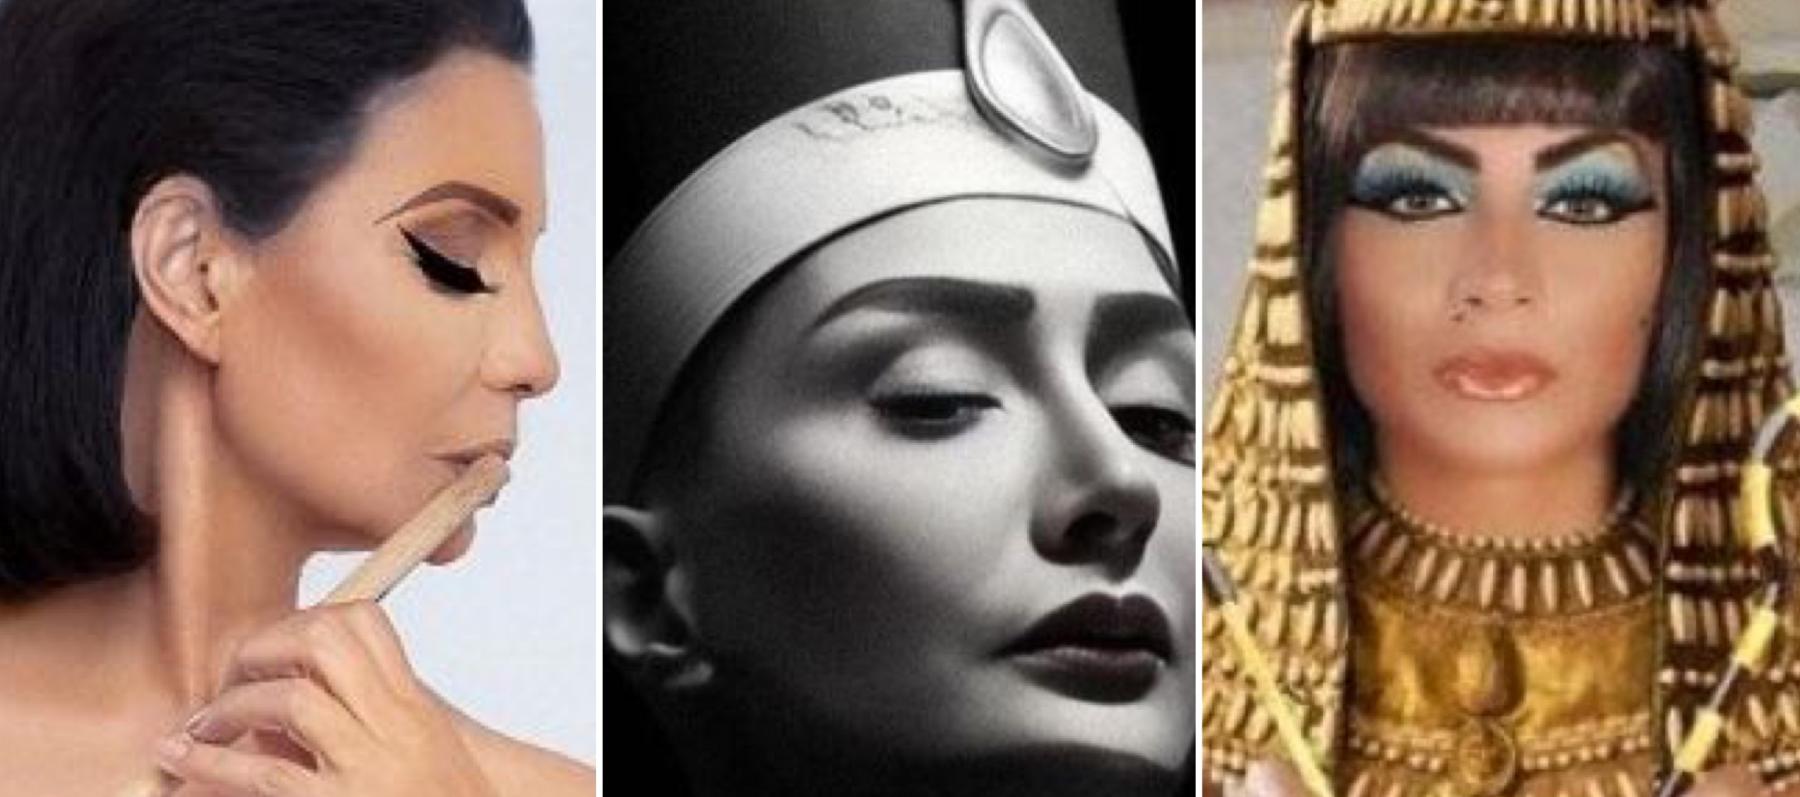 إطلالات المشاهير بـ "اللوك" الفرعوني - مصدر الصور إنستغرام